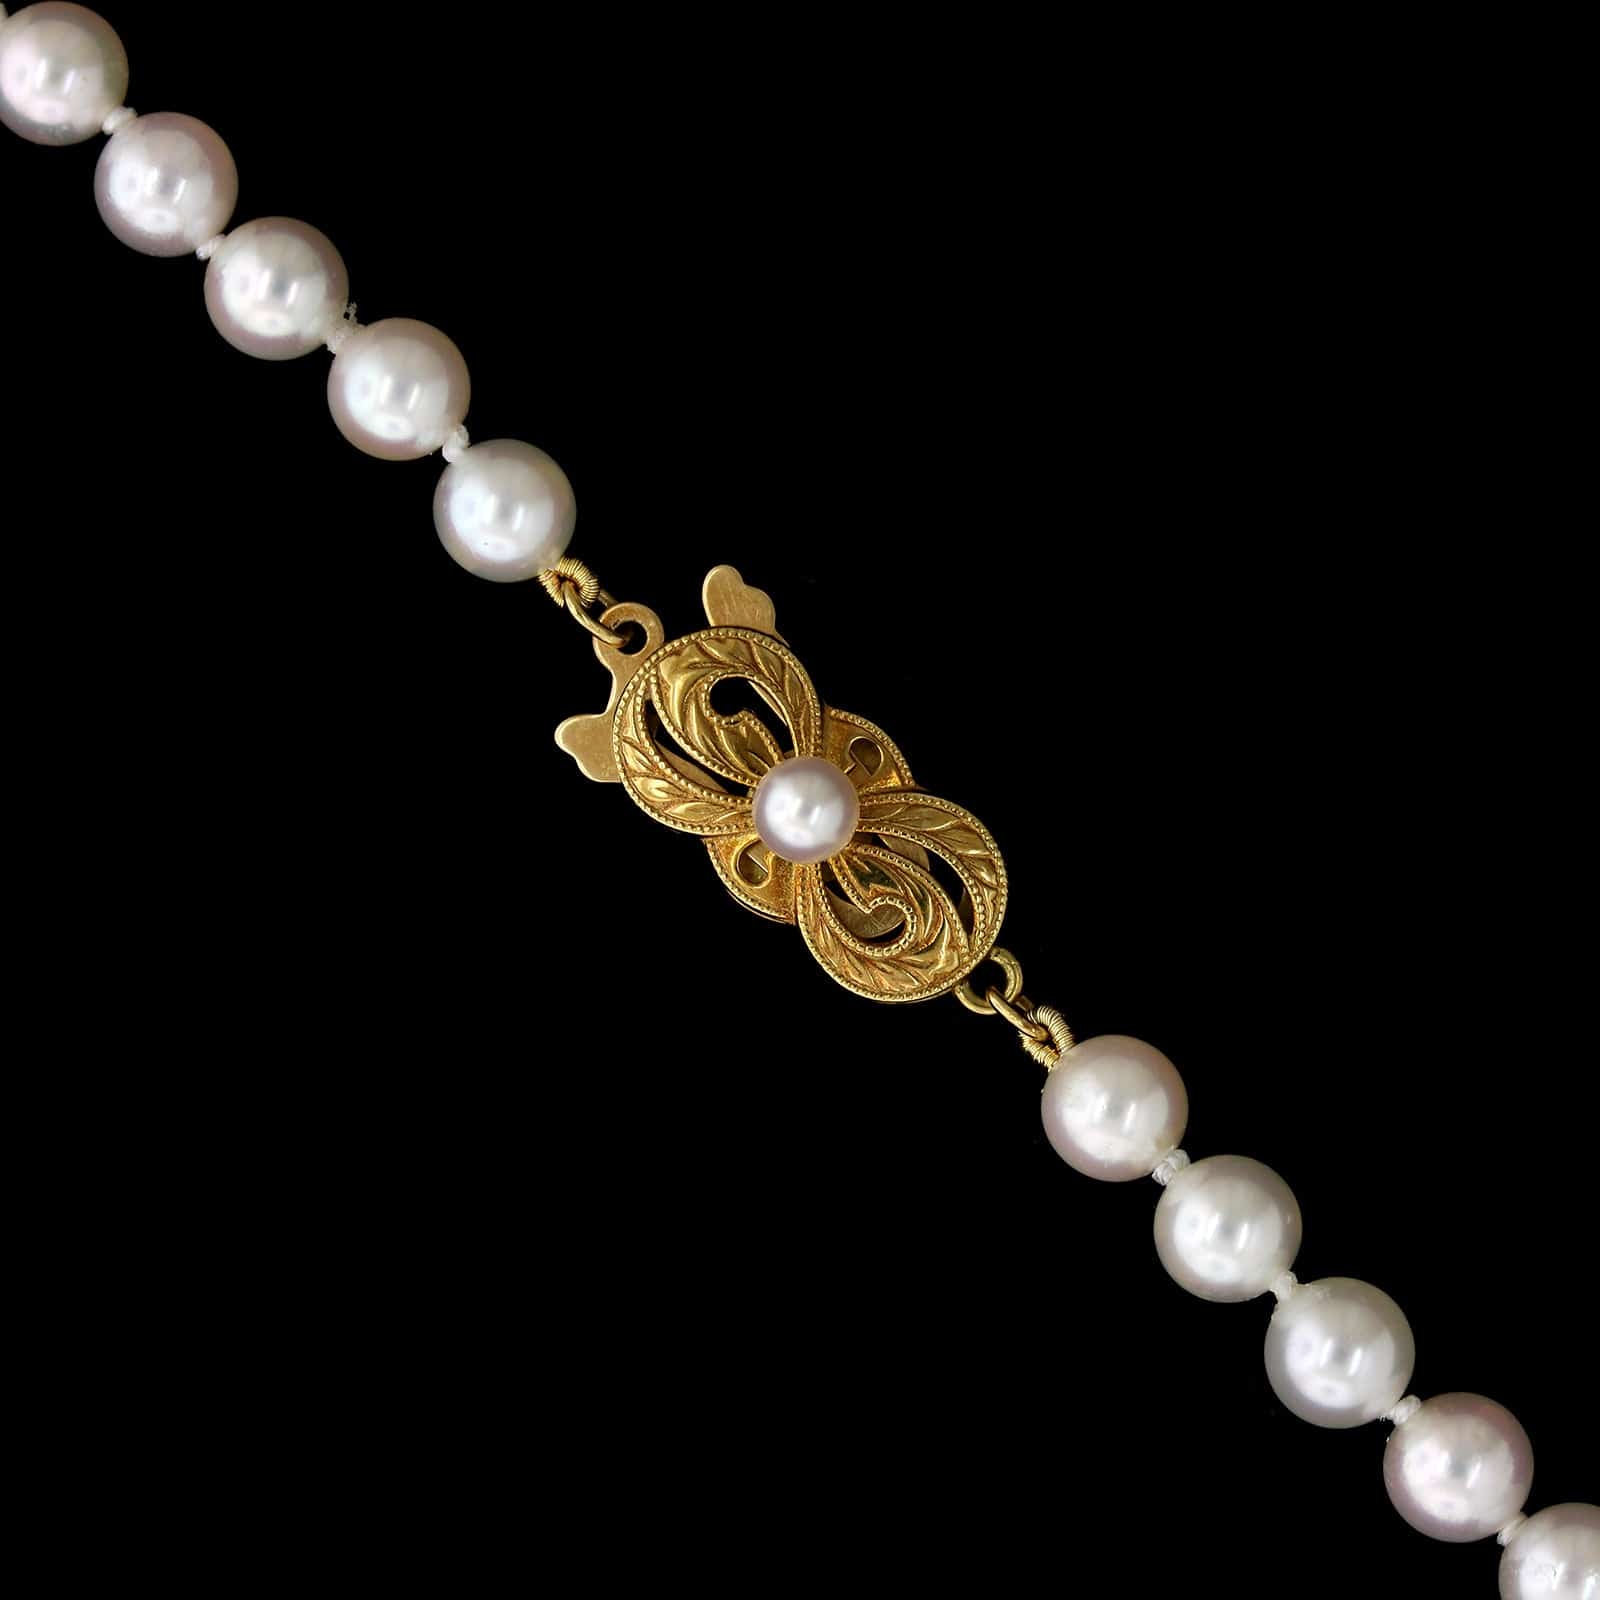 Mikimoto Estate Cultured Pearl Necklace